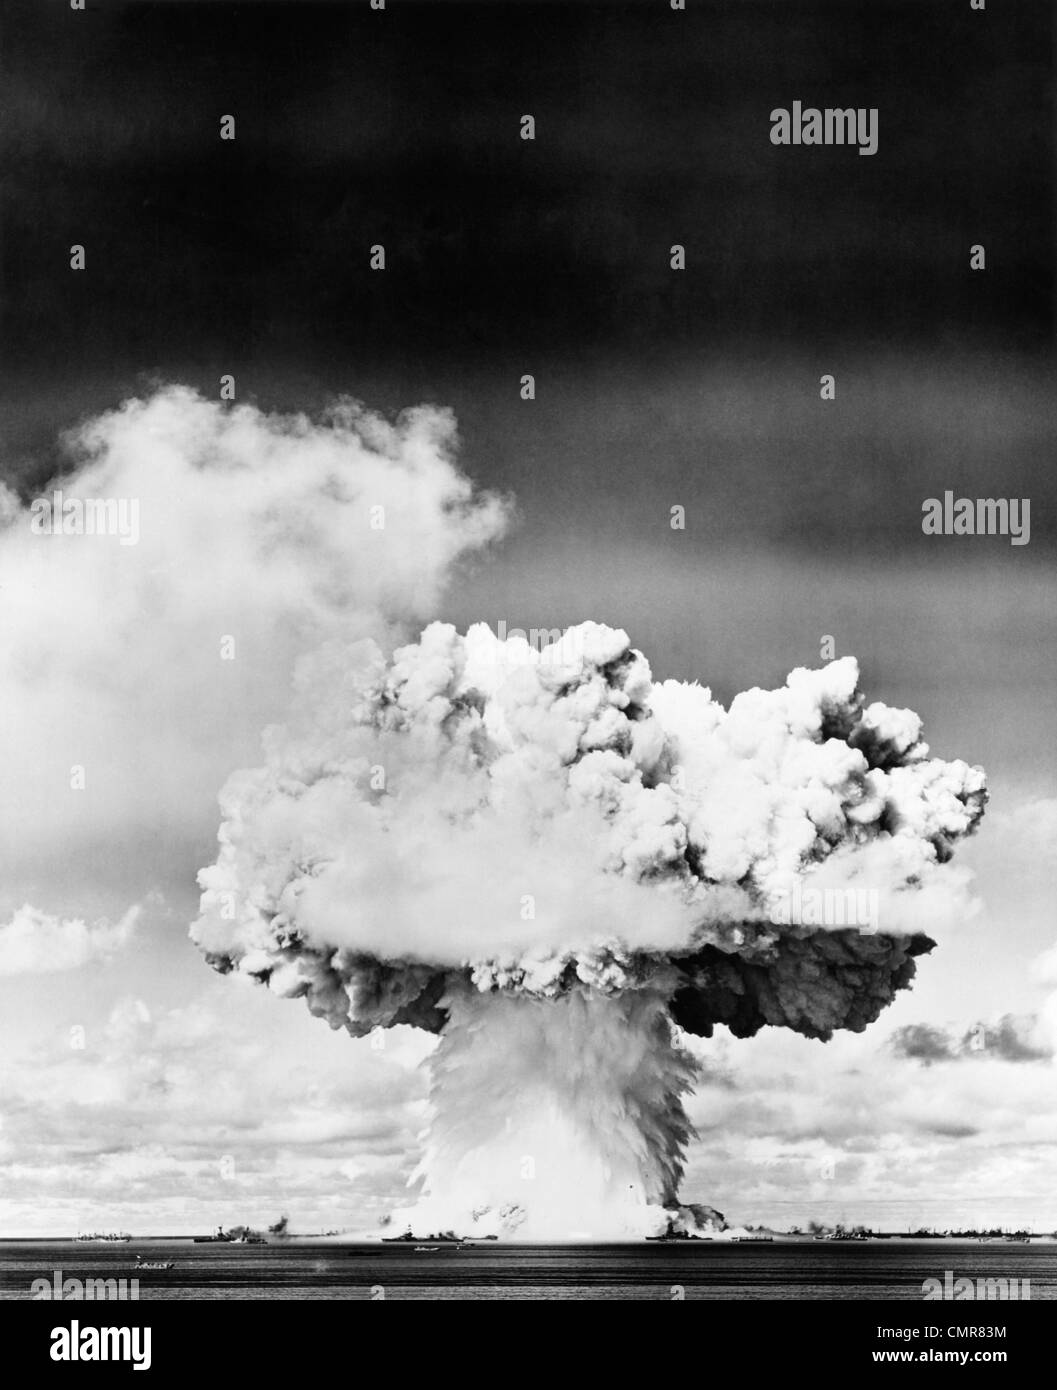 Années 1940 Années 1950 EXPLOSION D'UNE BOMBE ATOMIQUE MUSHROOM CLOUD Banque D'Images